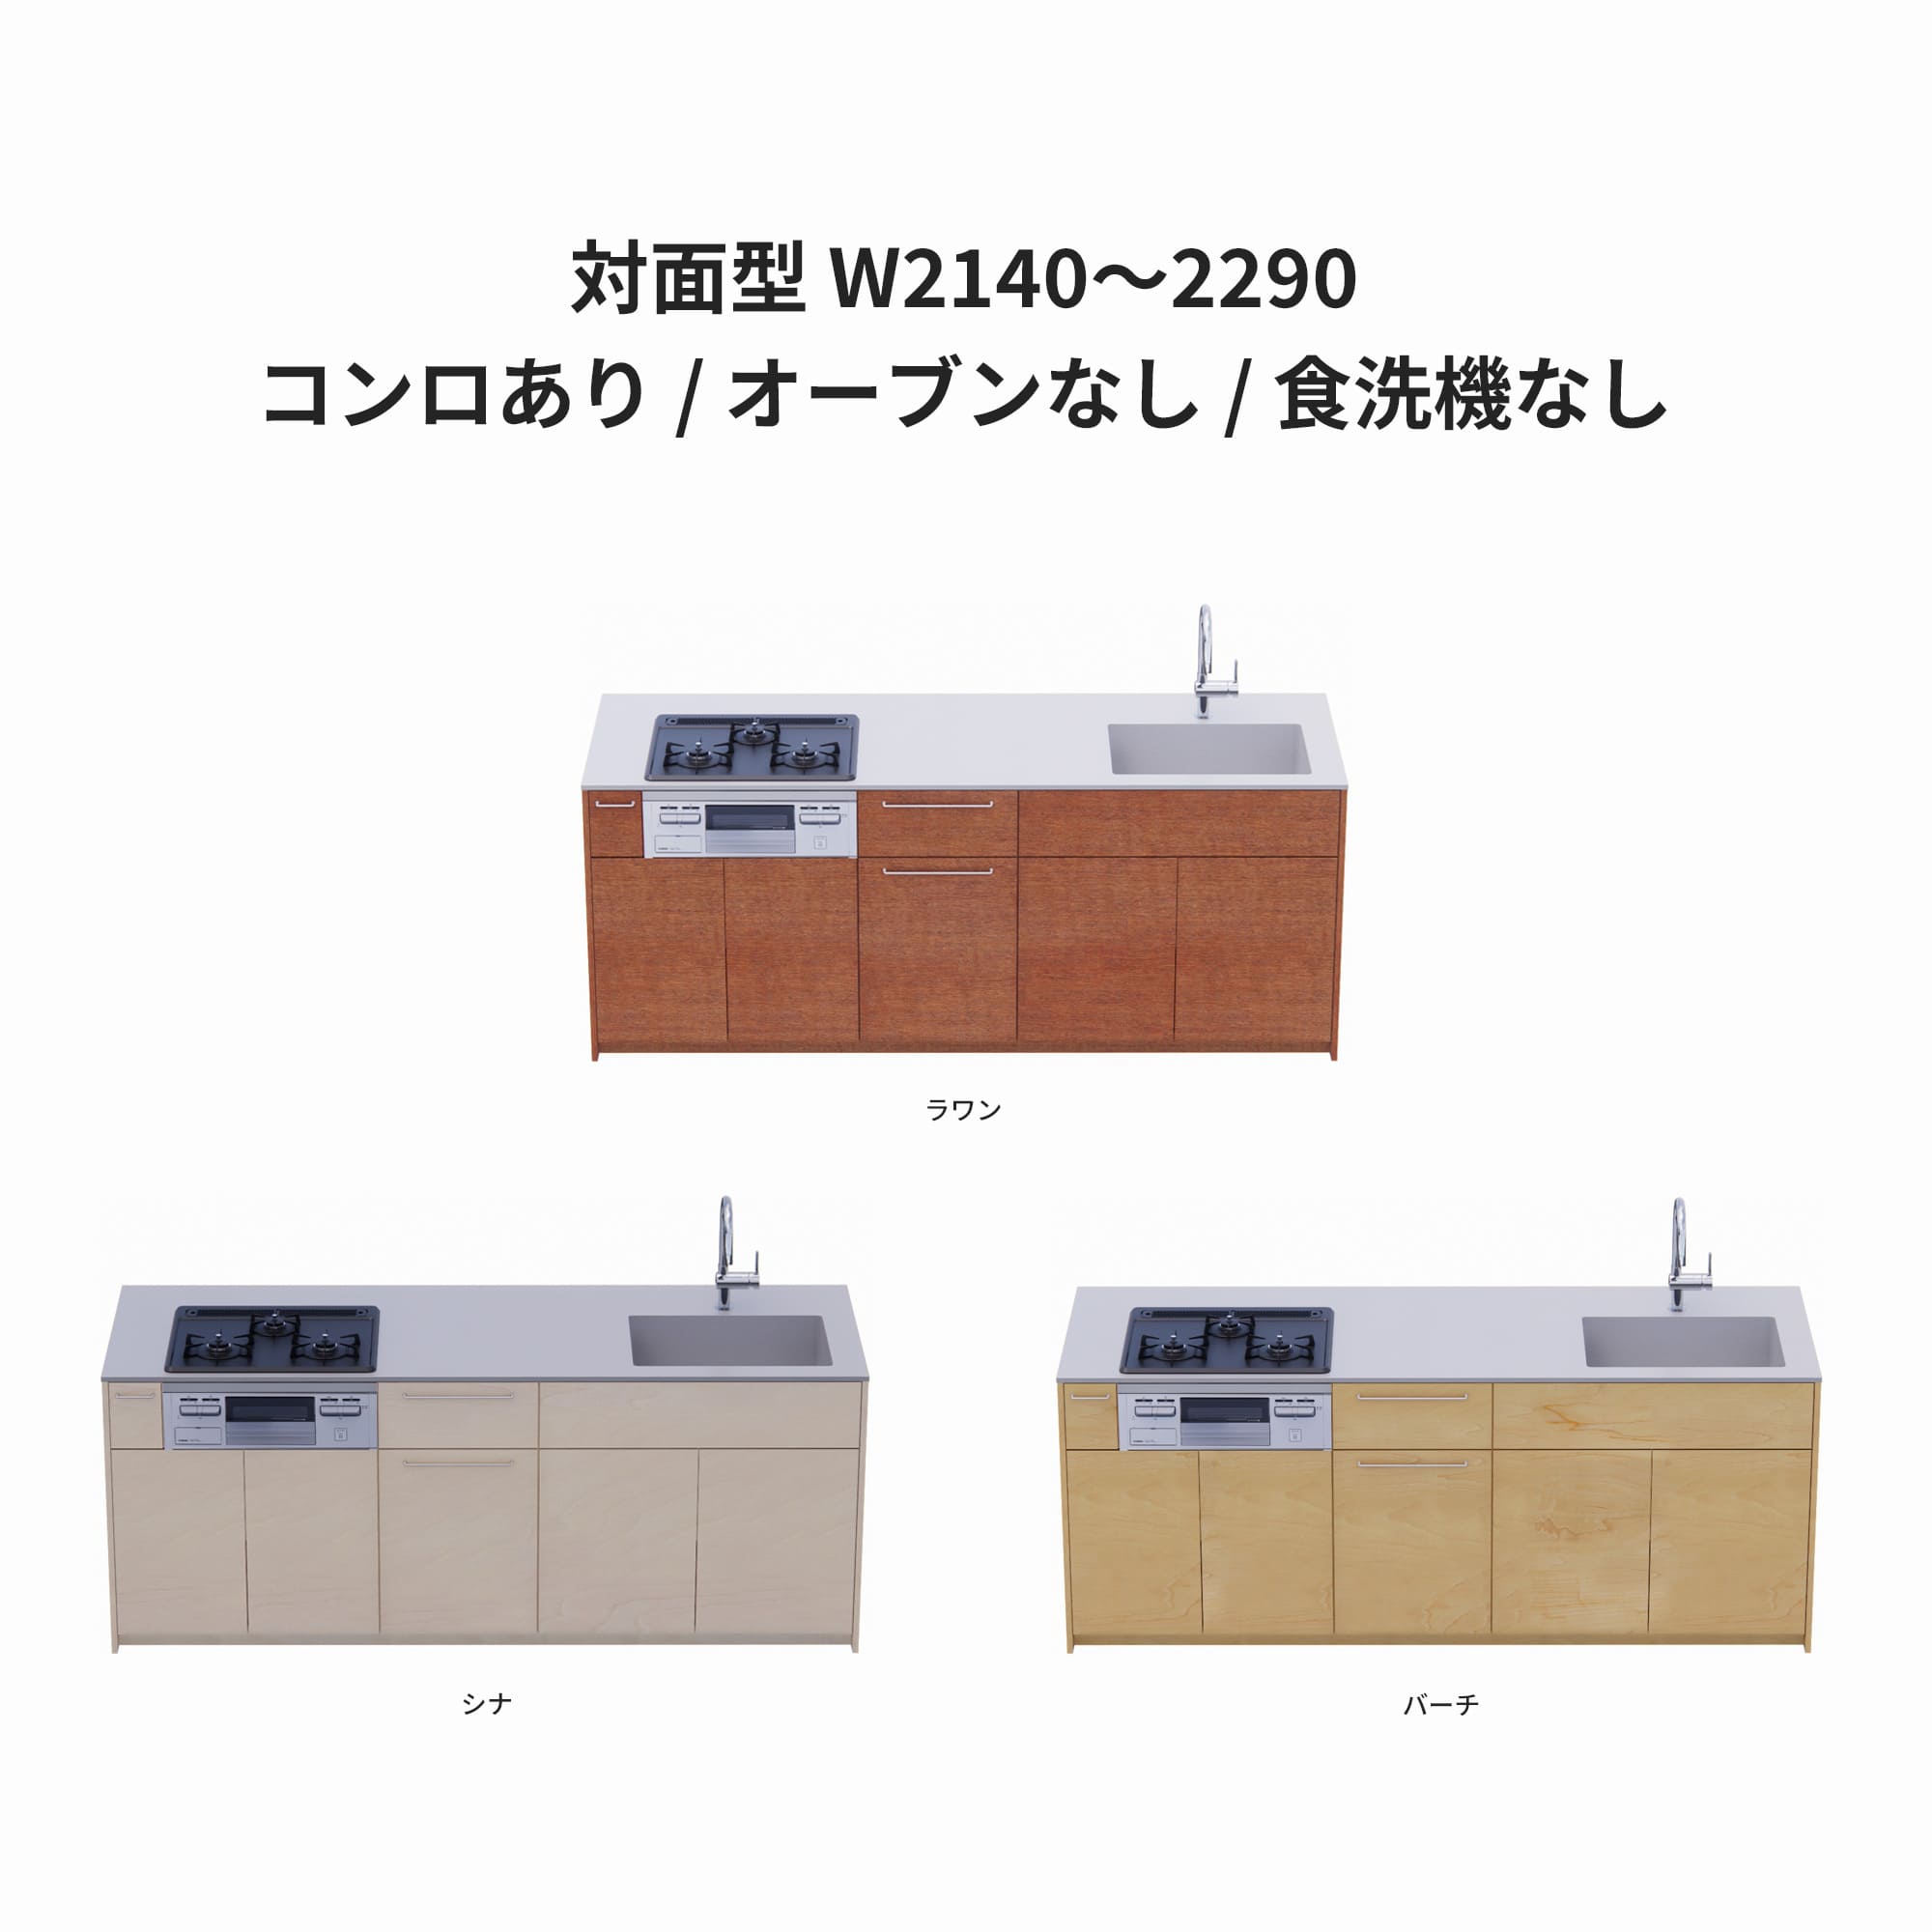 木製システムキッチン 対面型 W2140～2290・コンロあり / オーブンなし / 食洗機なし KB-KC022-35-G183 ラワン・シナ・バーチが選択できます